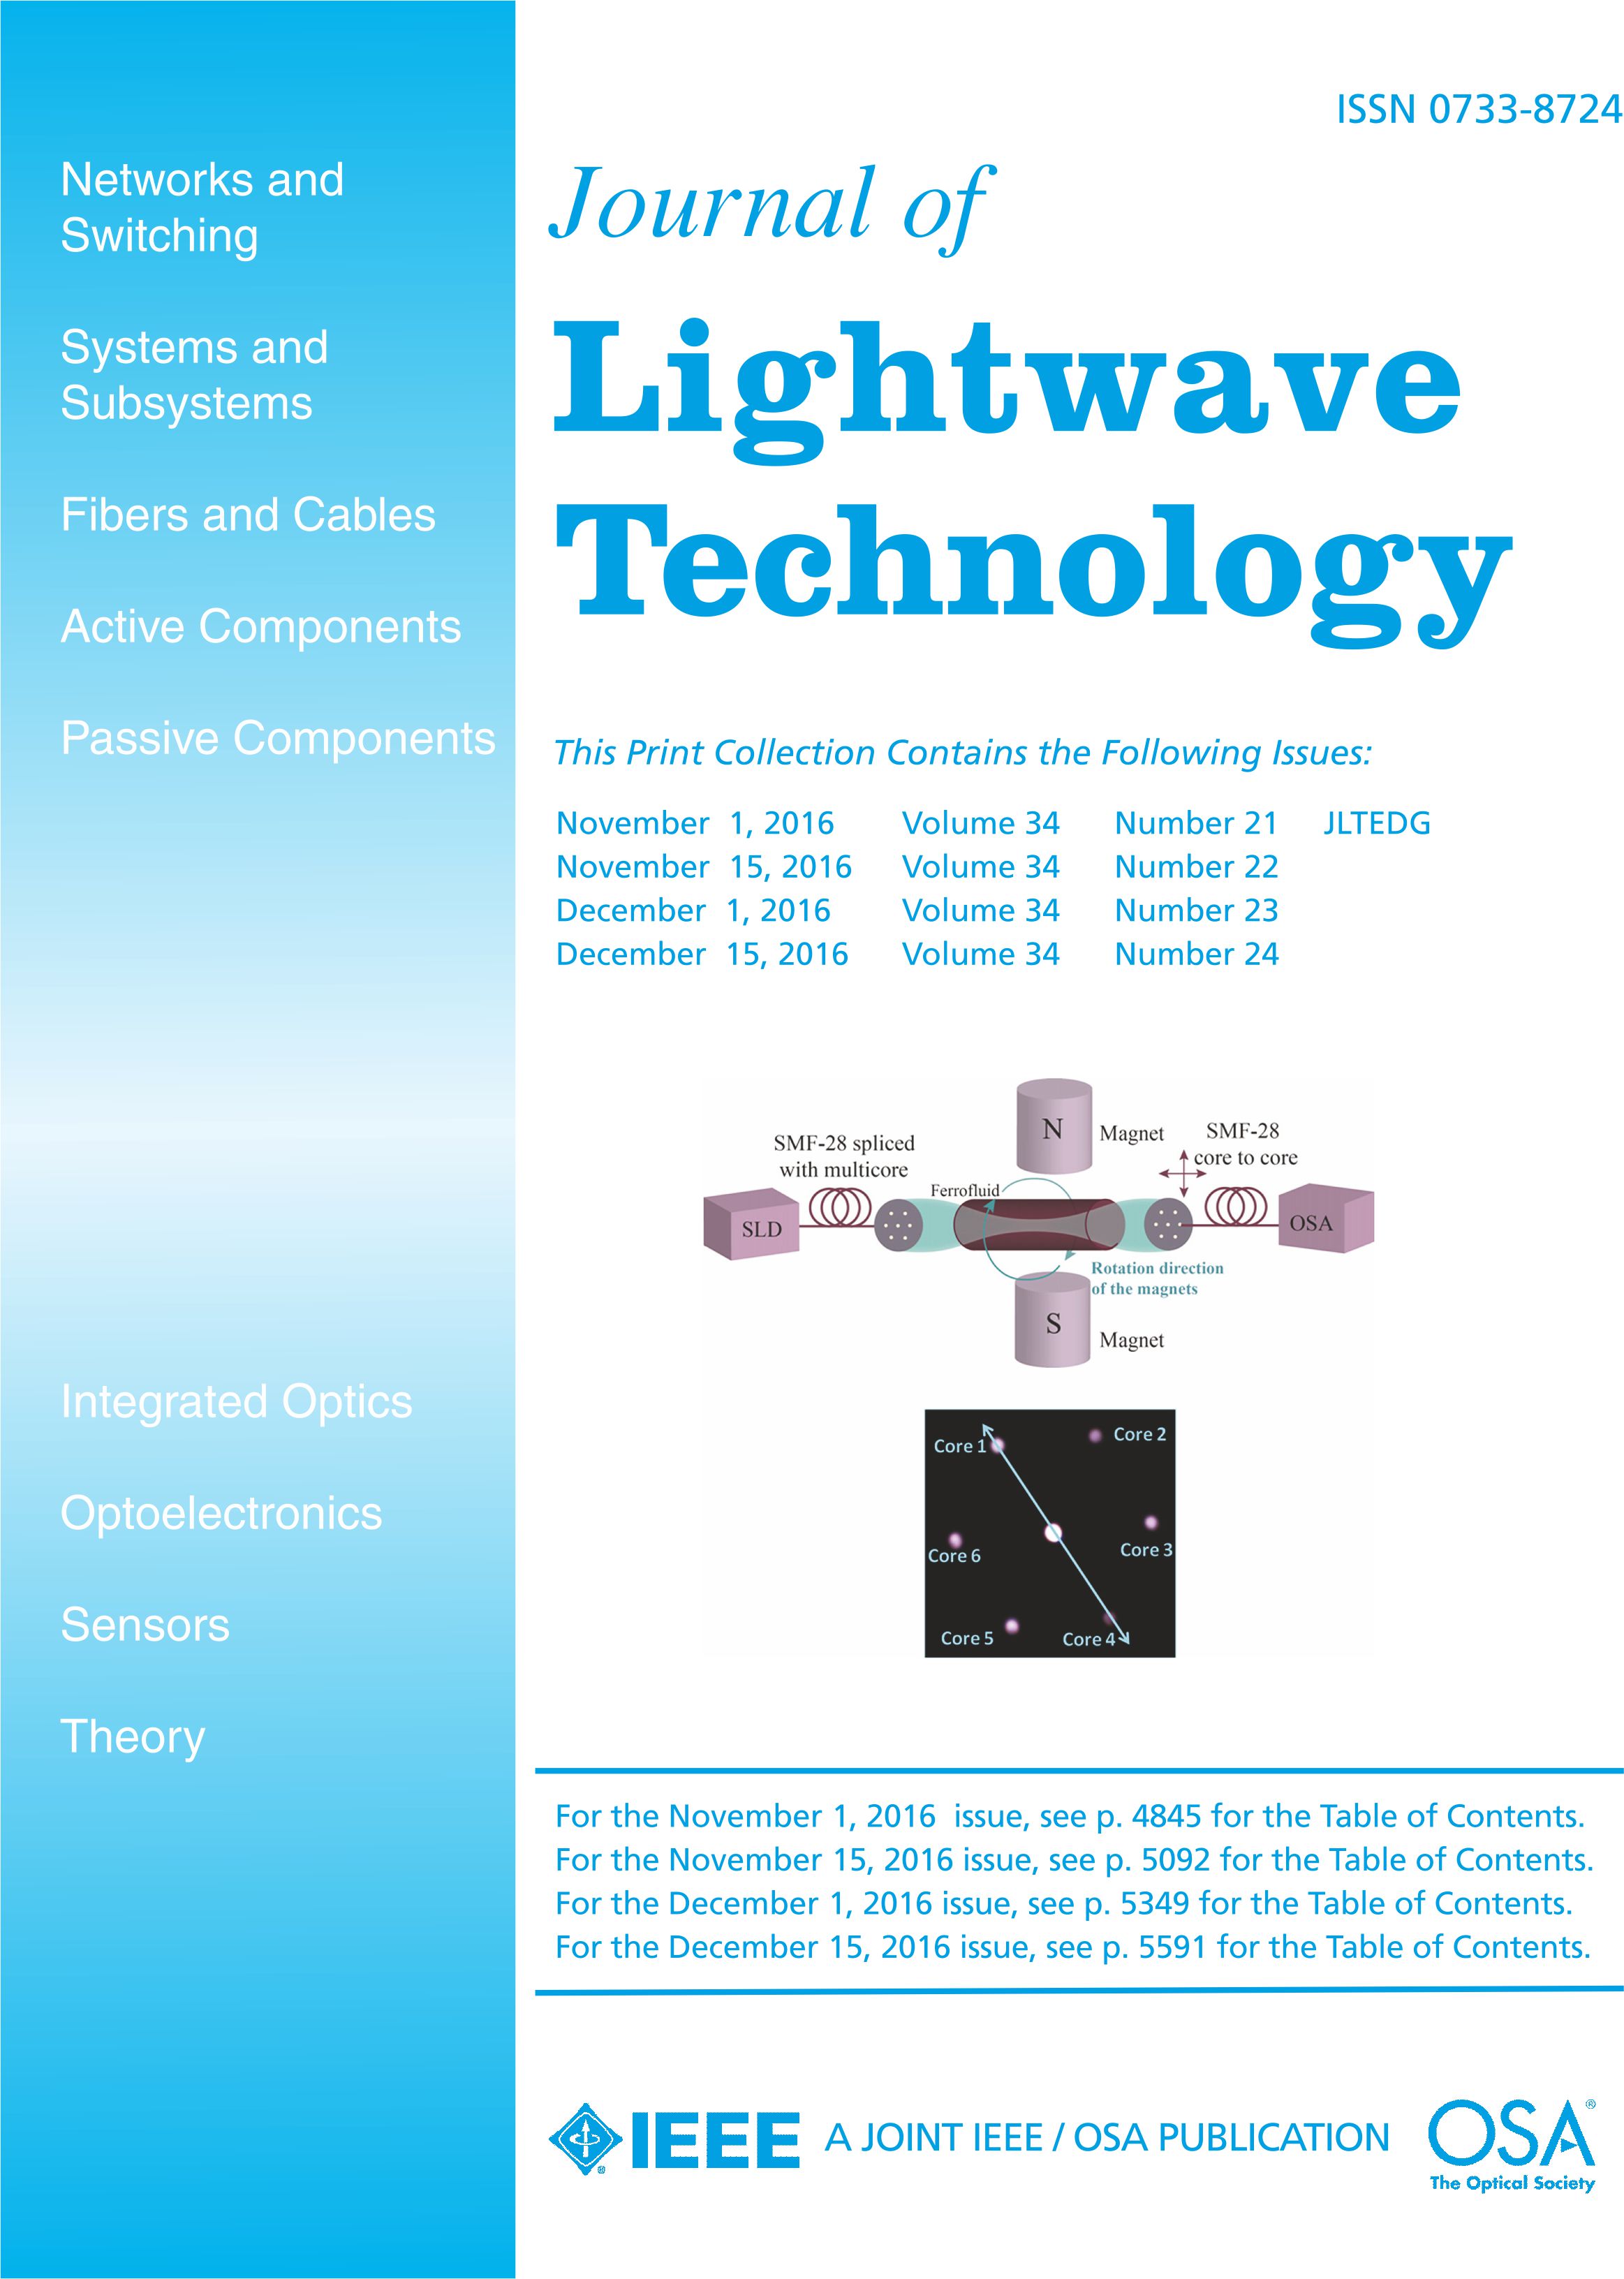 IEEE/OSA Journal of Lightwave Technology